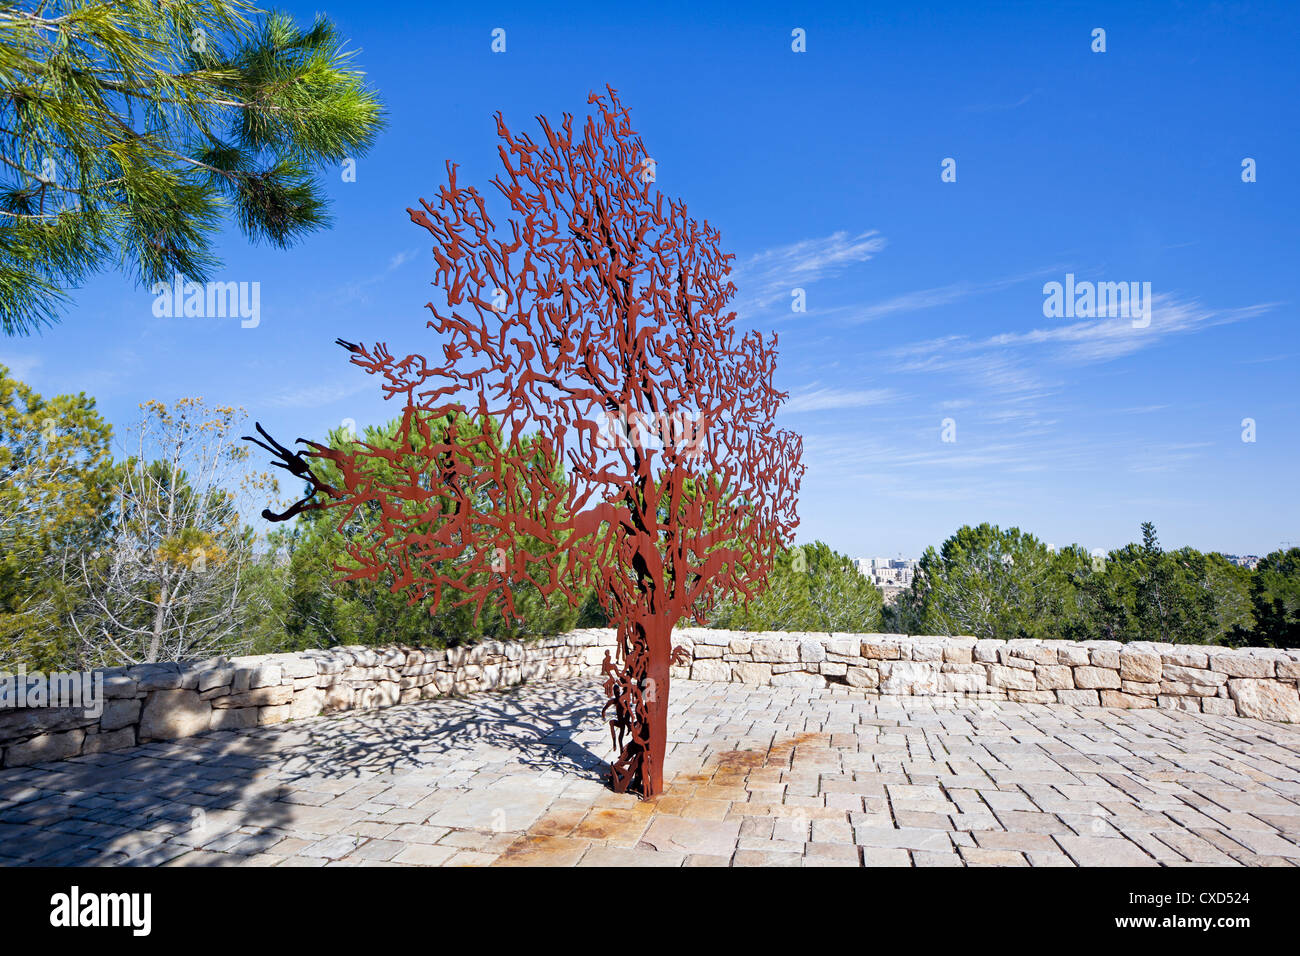 De l'Holocauste Yad Vashem, partisans de l'arbre commémoratif Panorama, le Mont Herzl, Jérusalem, Israël, Moyen Orient Banque D'Images